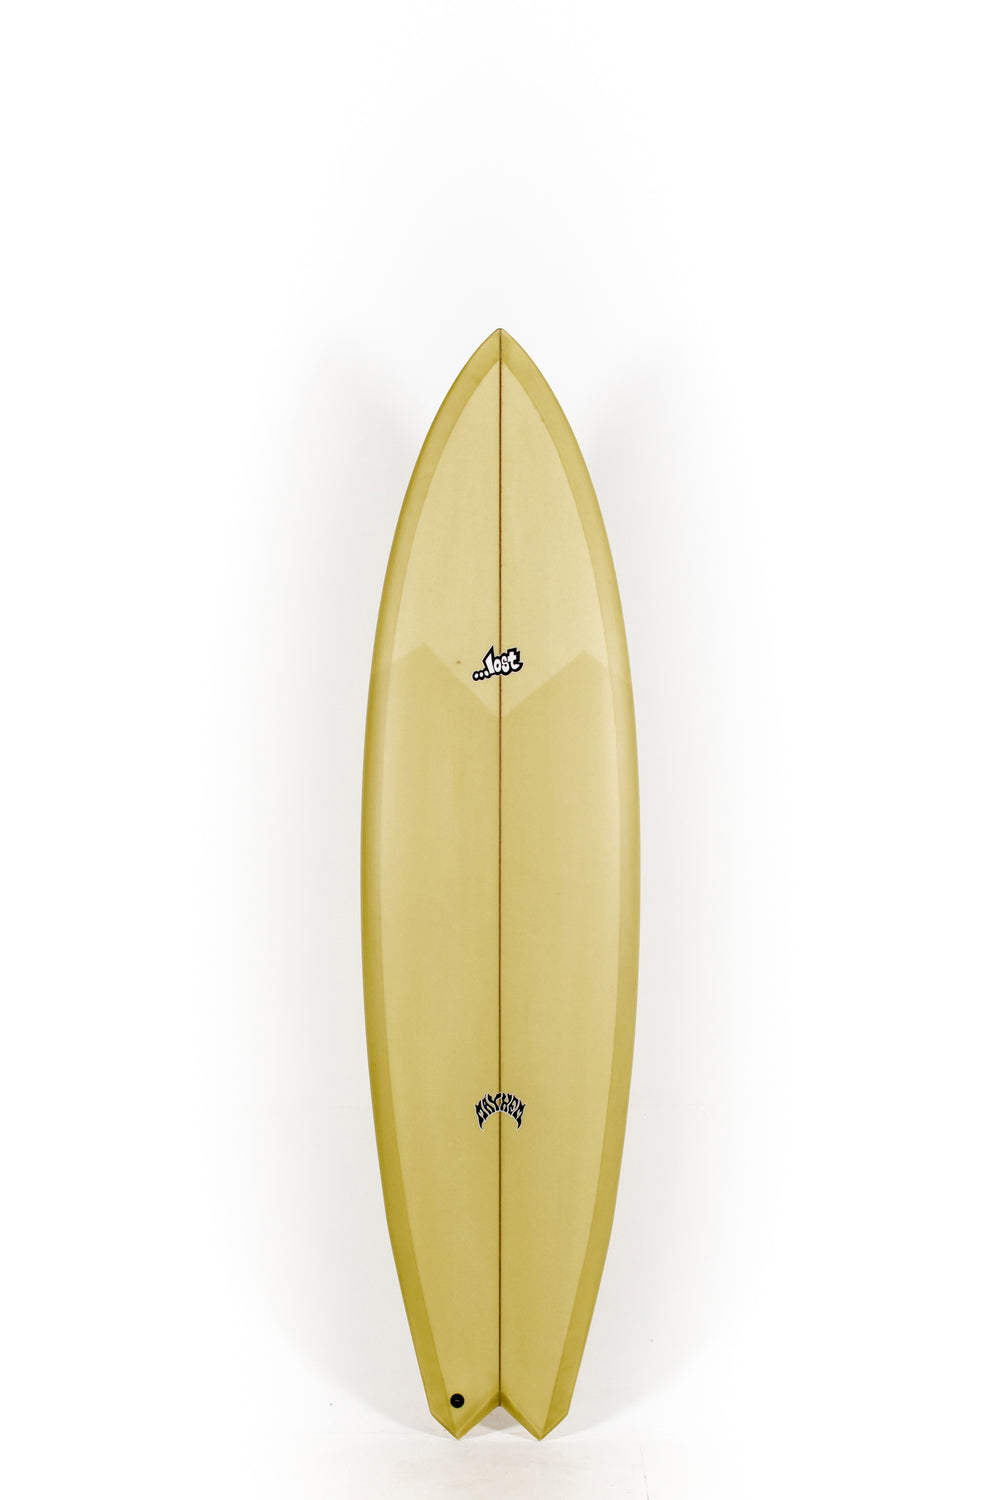 Pukas Surf Shop - Lost Surfboards - GLYDRA by Matt Biolos - 7'2